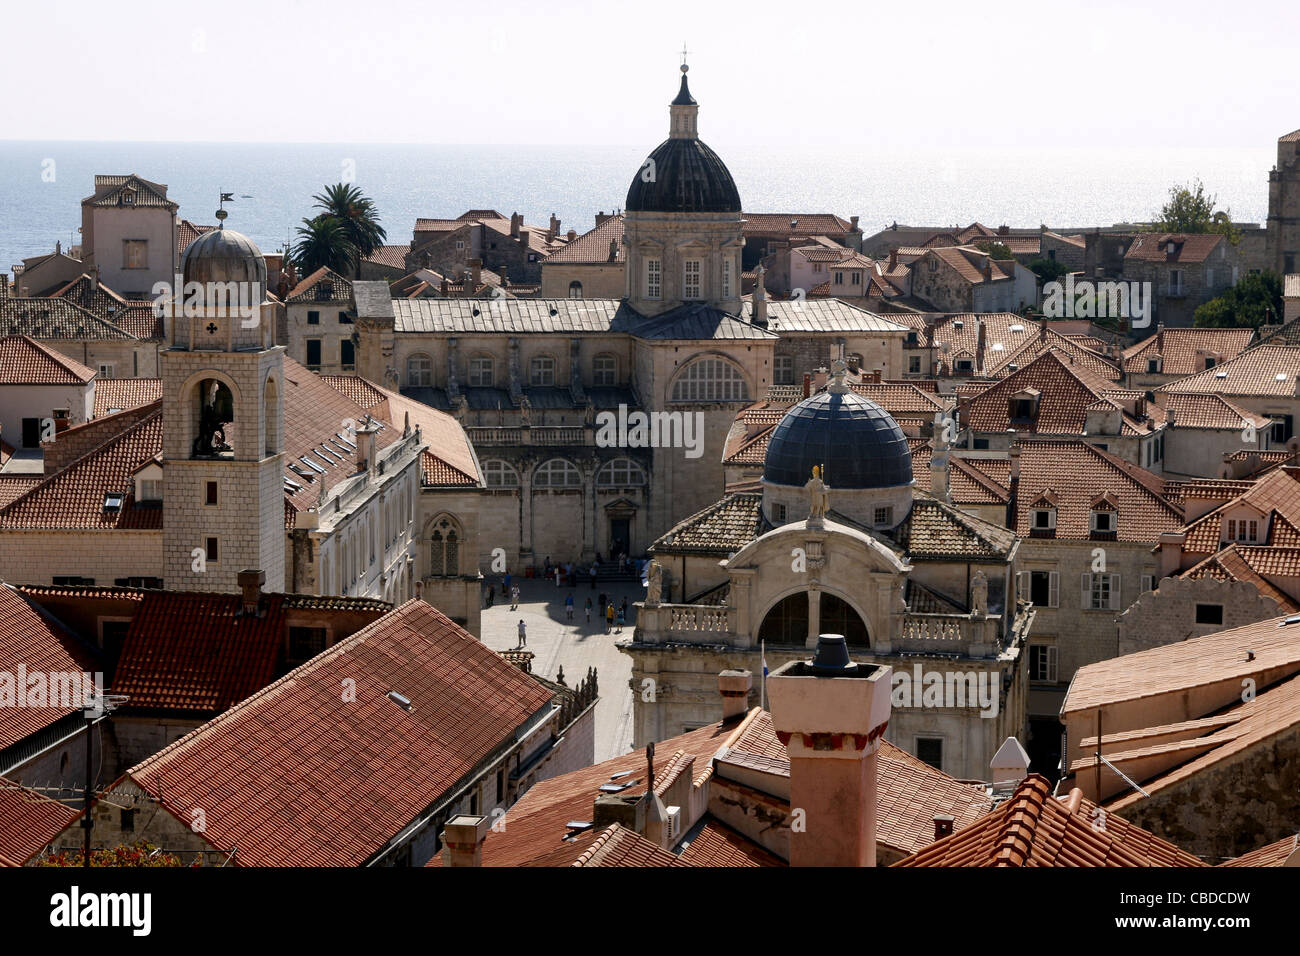 Campanile ST.Blasius chiesa cattedrale e la città vecchia di Dubrovnik Croazia 05 Ottobre 2011 Foto Stock